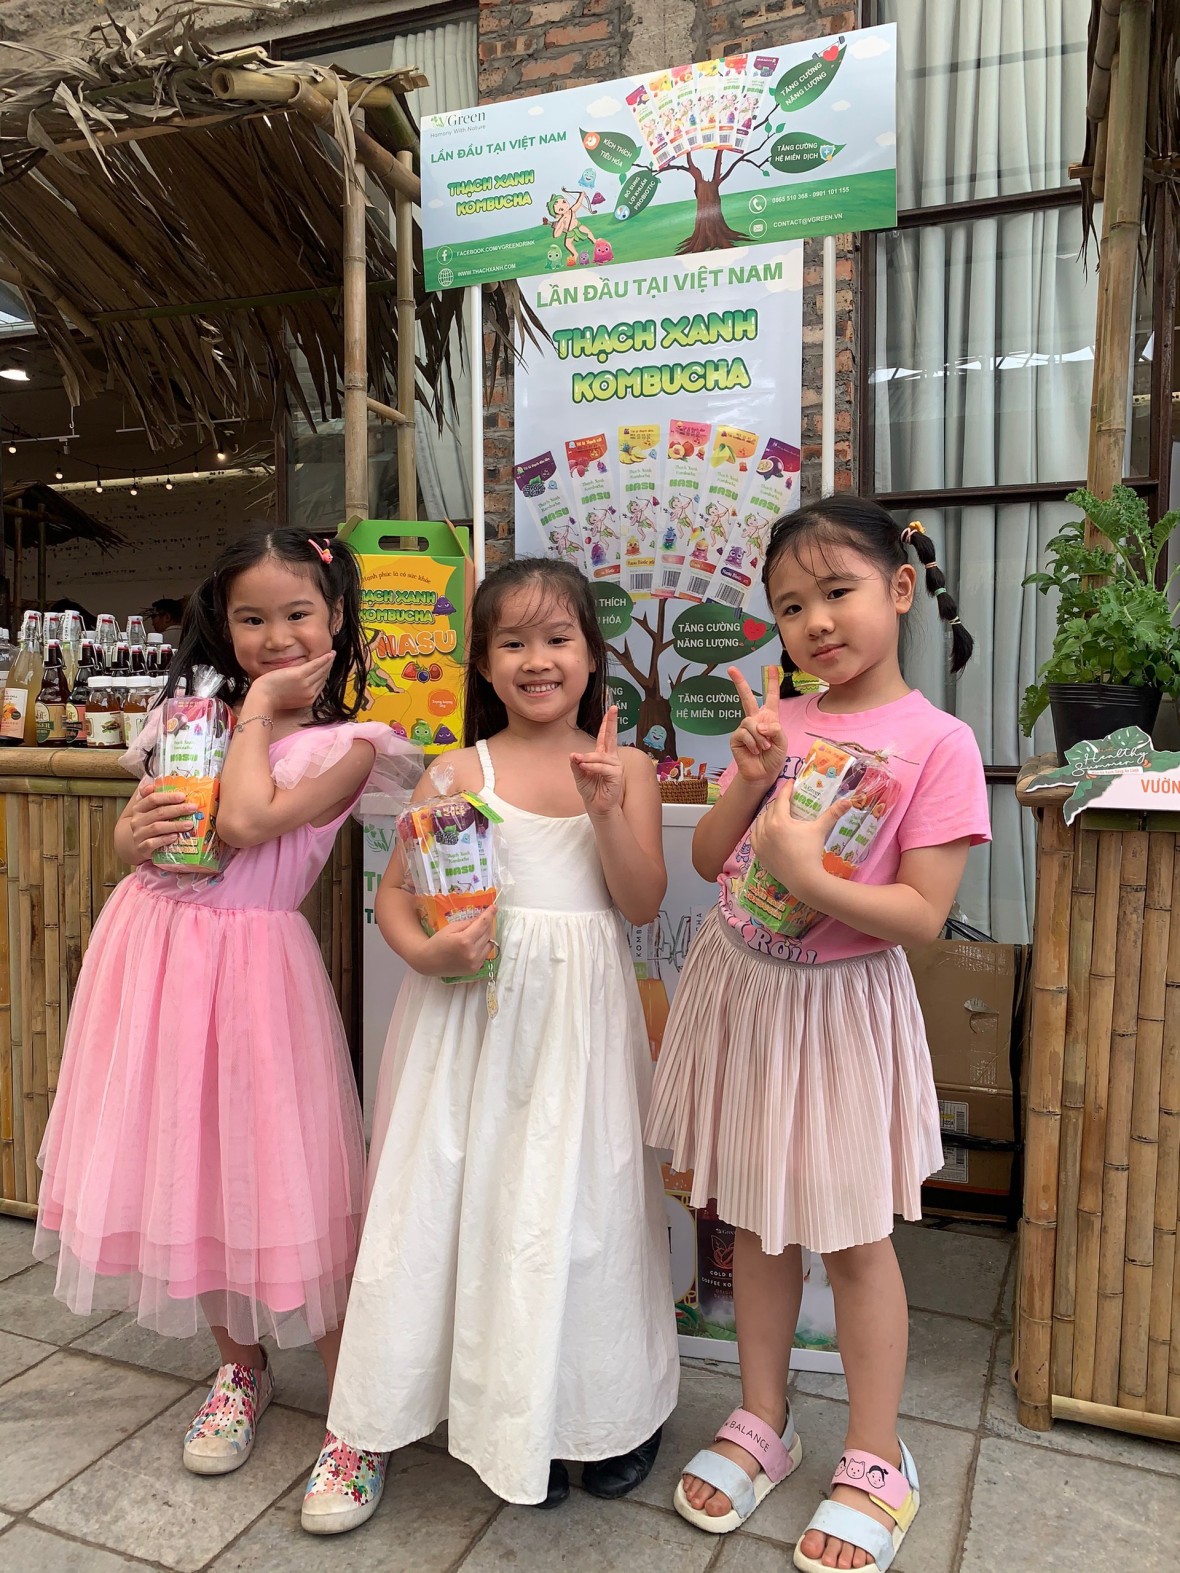 VGreen ra mắt sản phẩm Thạch xanh Kombucha Hasu dành cho trẻ em